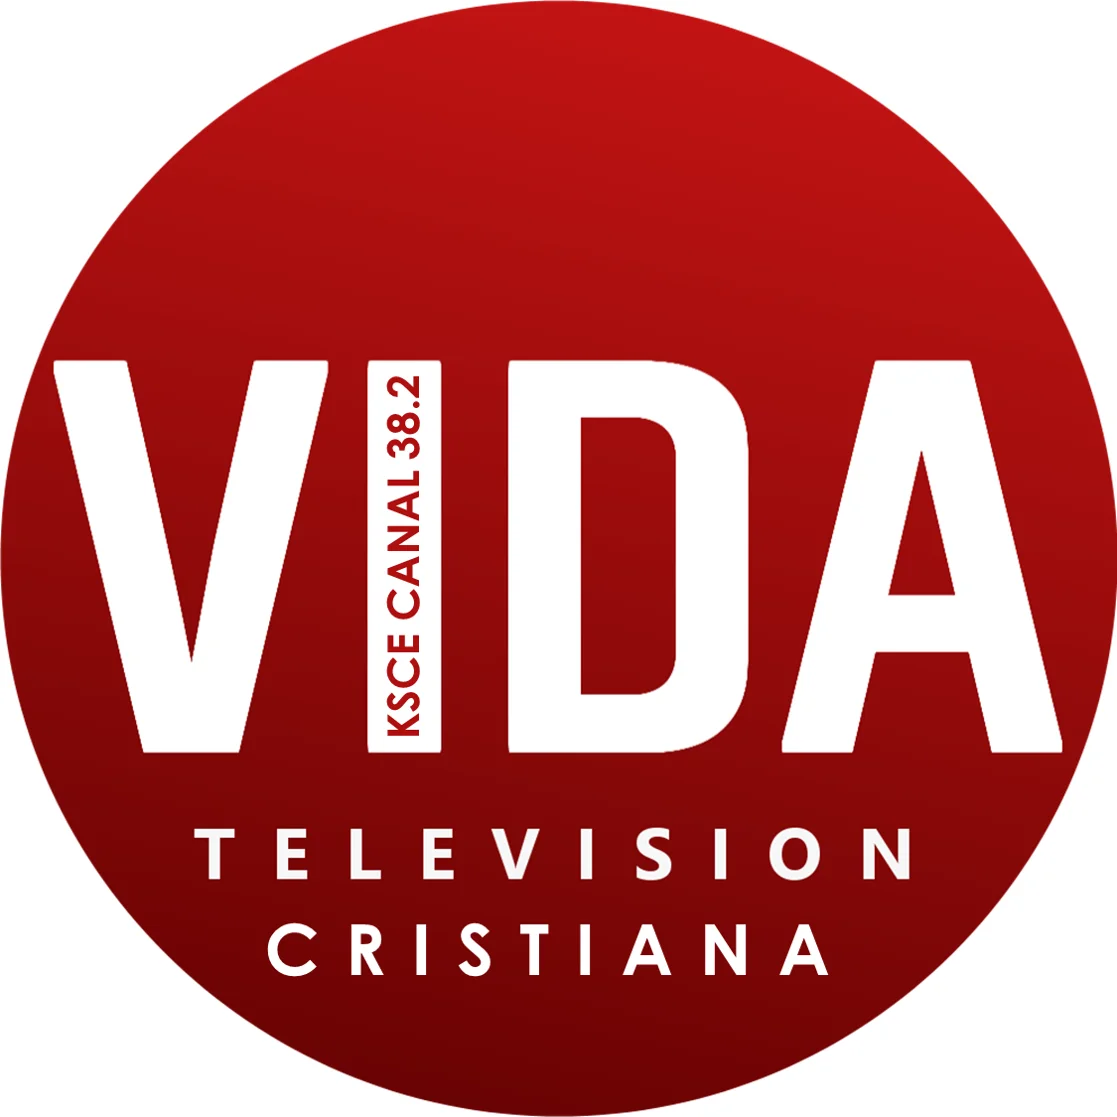 VIDA TV